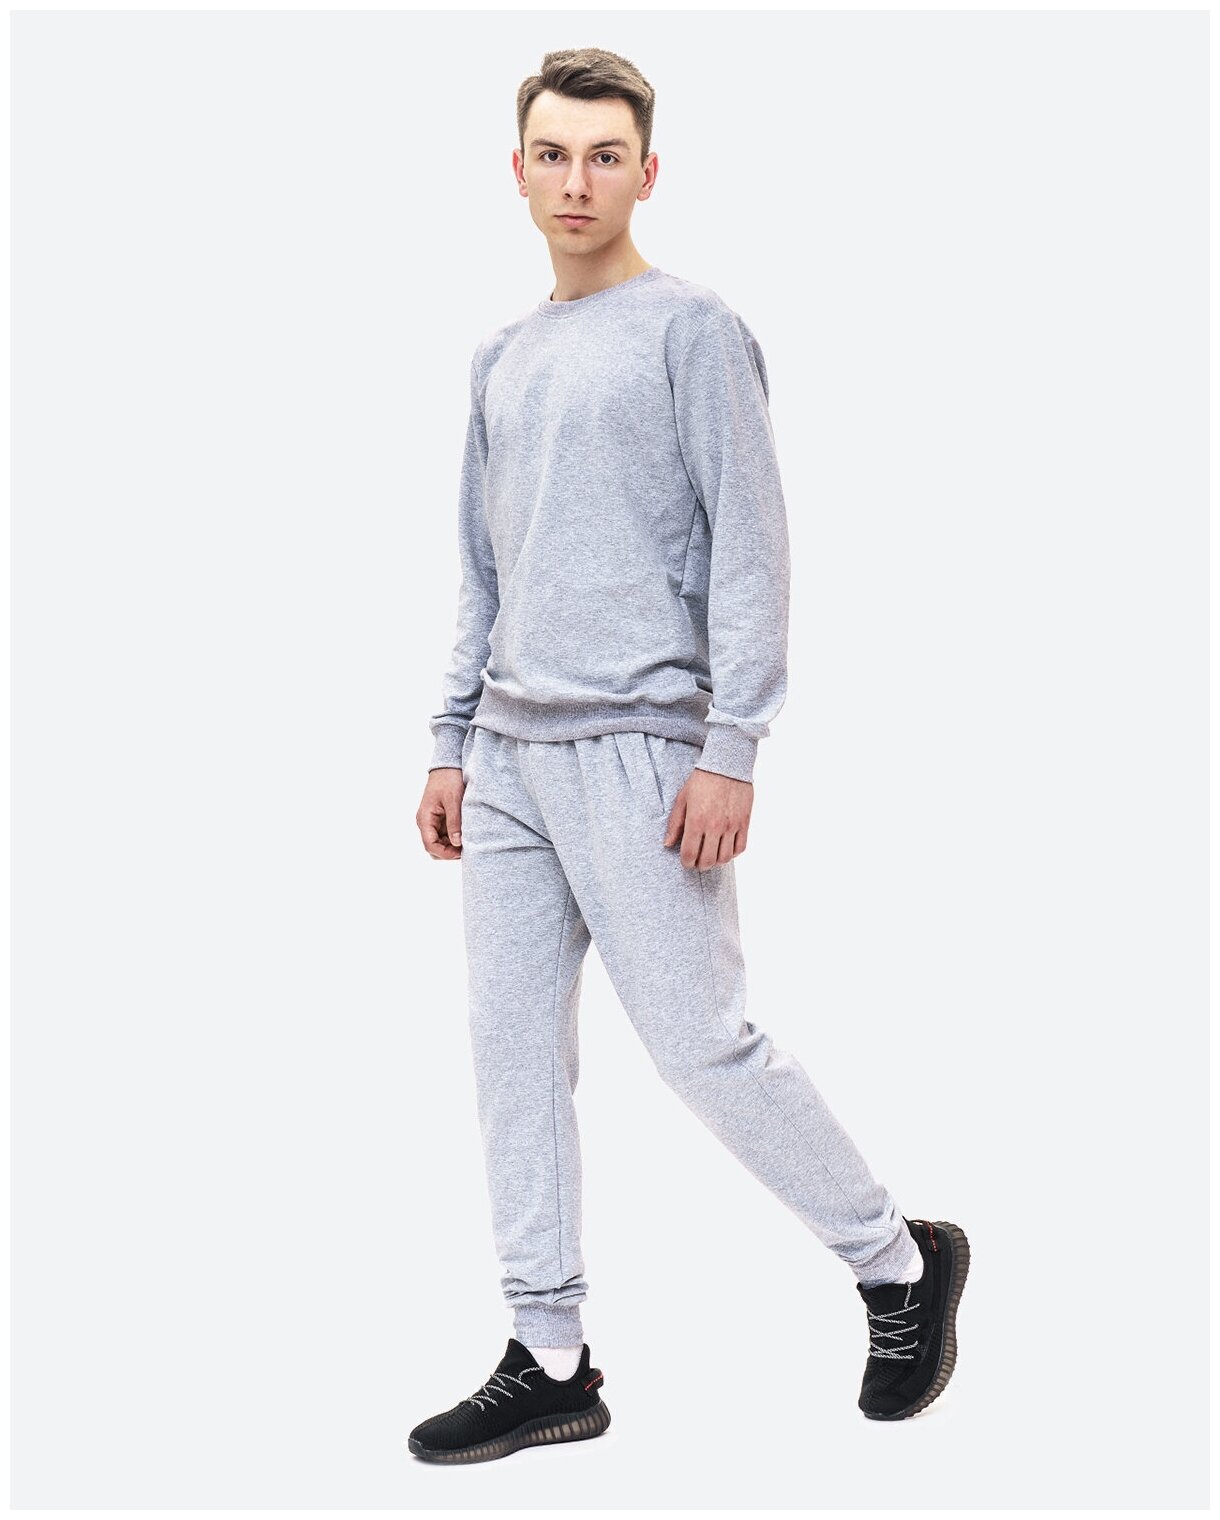 Спортивный костюм мужской, серый, 50 — купить в интернет-магазине по низкой цене на Яндекс Маркете